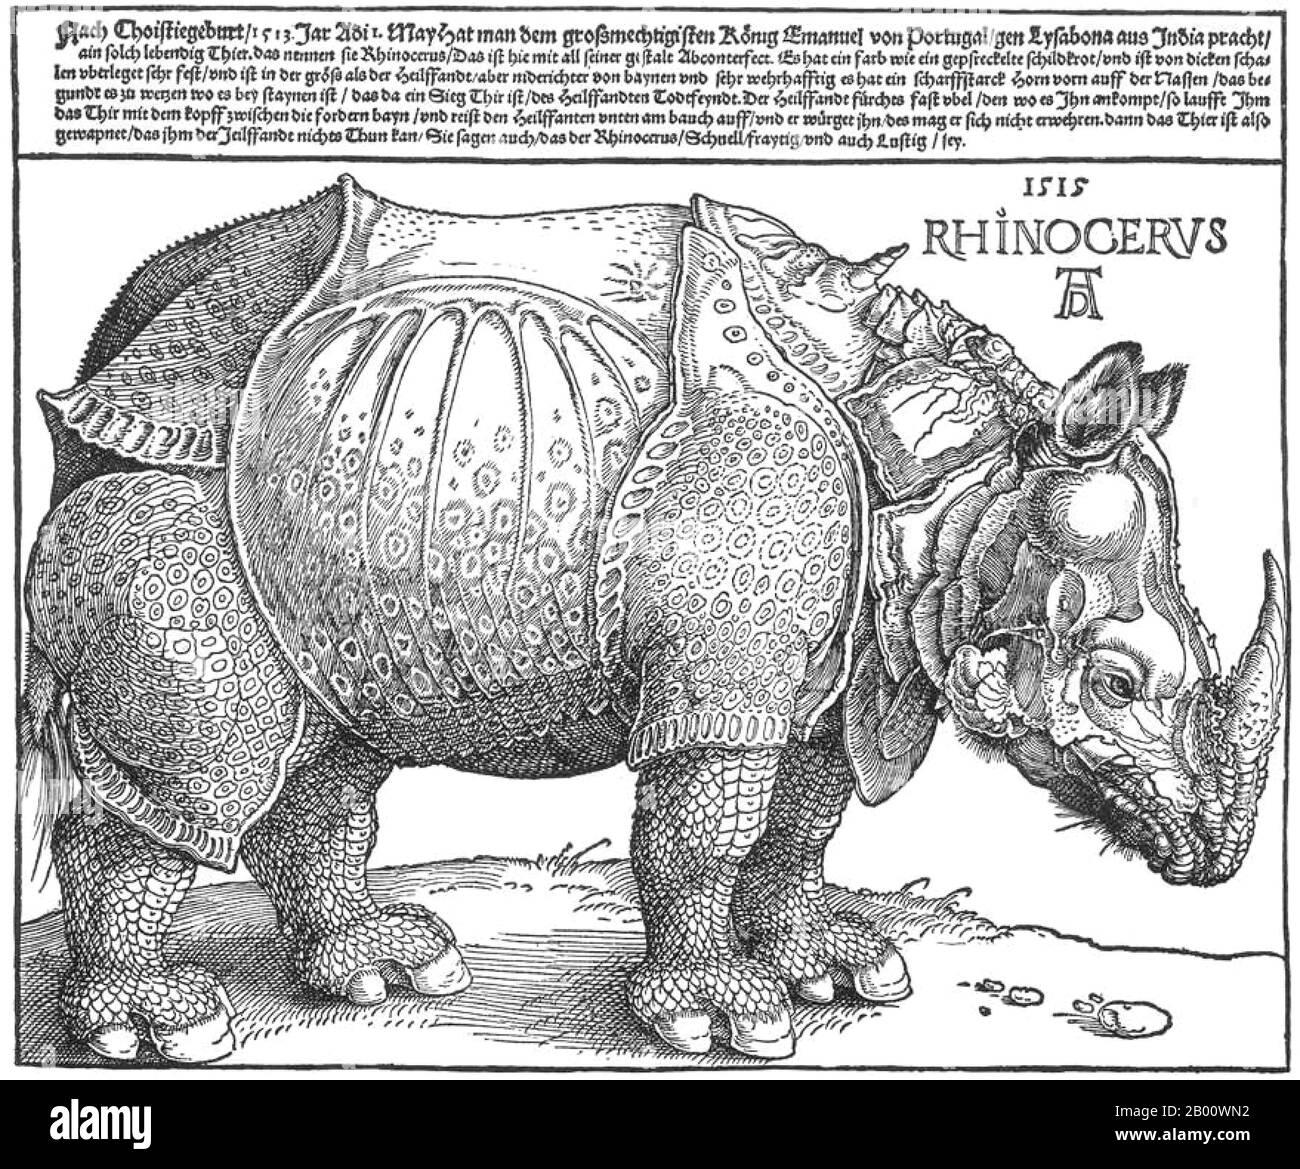 Germania: 'Rhinoceros di ürer'. Stampa in legno di Albrecht Durer (1471-1528), 1515. Albrecht Dürer (Norimberga, 21 maggio 1471 – Norimberga, 6 aprile 1528) è stato un . Le sue stampe stabilirono la sua reputazione in tutta Europa quando era ancora negli anni '20, e da allora è stato tradizionalmente considerato come il più grande artista del Rinascimento settentrionale. L'introduzione di motivi classici nell'arte settentrionale da parte di Dürer, attraverso la sua conoscenza di artisti italiani e umanisti tedeschi, ha assicurato la sua reputazione di una delle figure più importanti del Rinascimento settentrionale. Foto Stock